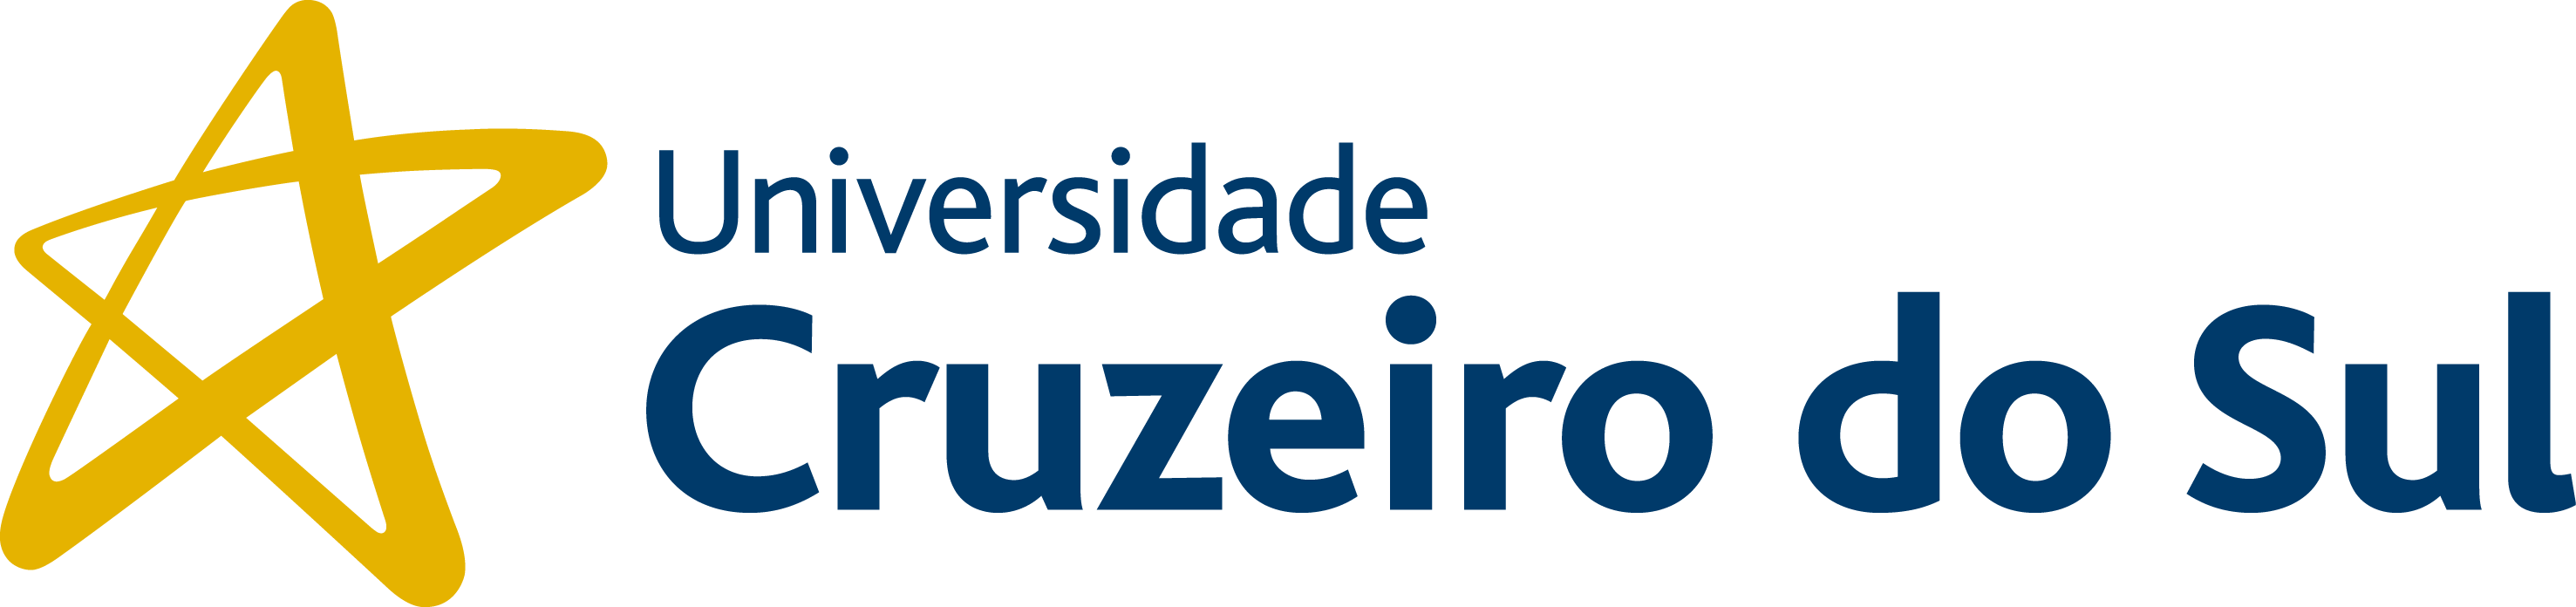 Universidade Cruzeiro do Sul - Campus Villa-Lobos